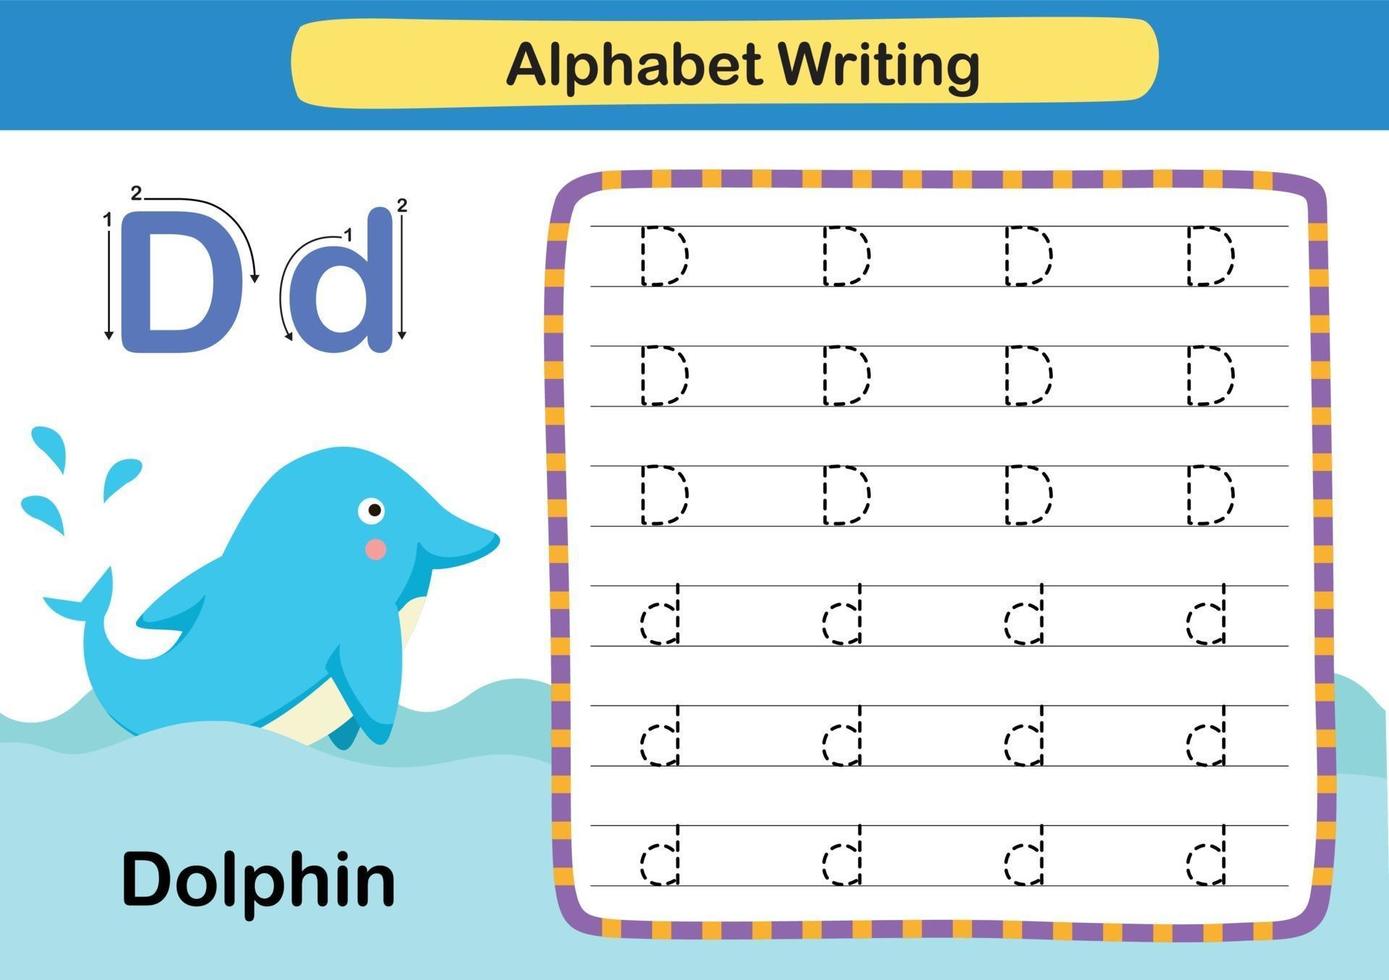 exercice de lettre d-dauphin de l'alphabet avec le vocabulaire de la bande dessinée vecteur